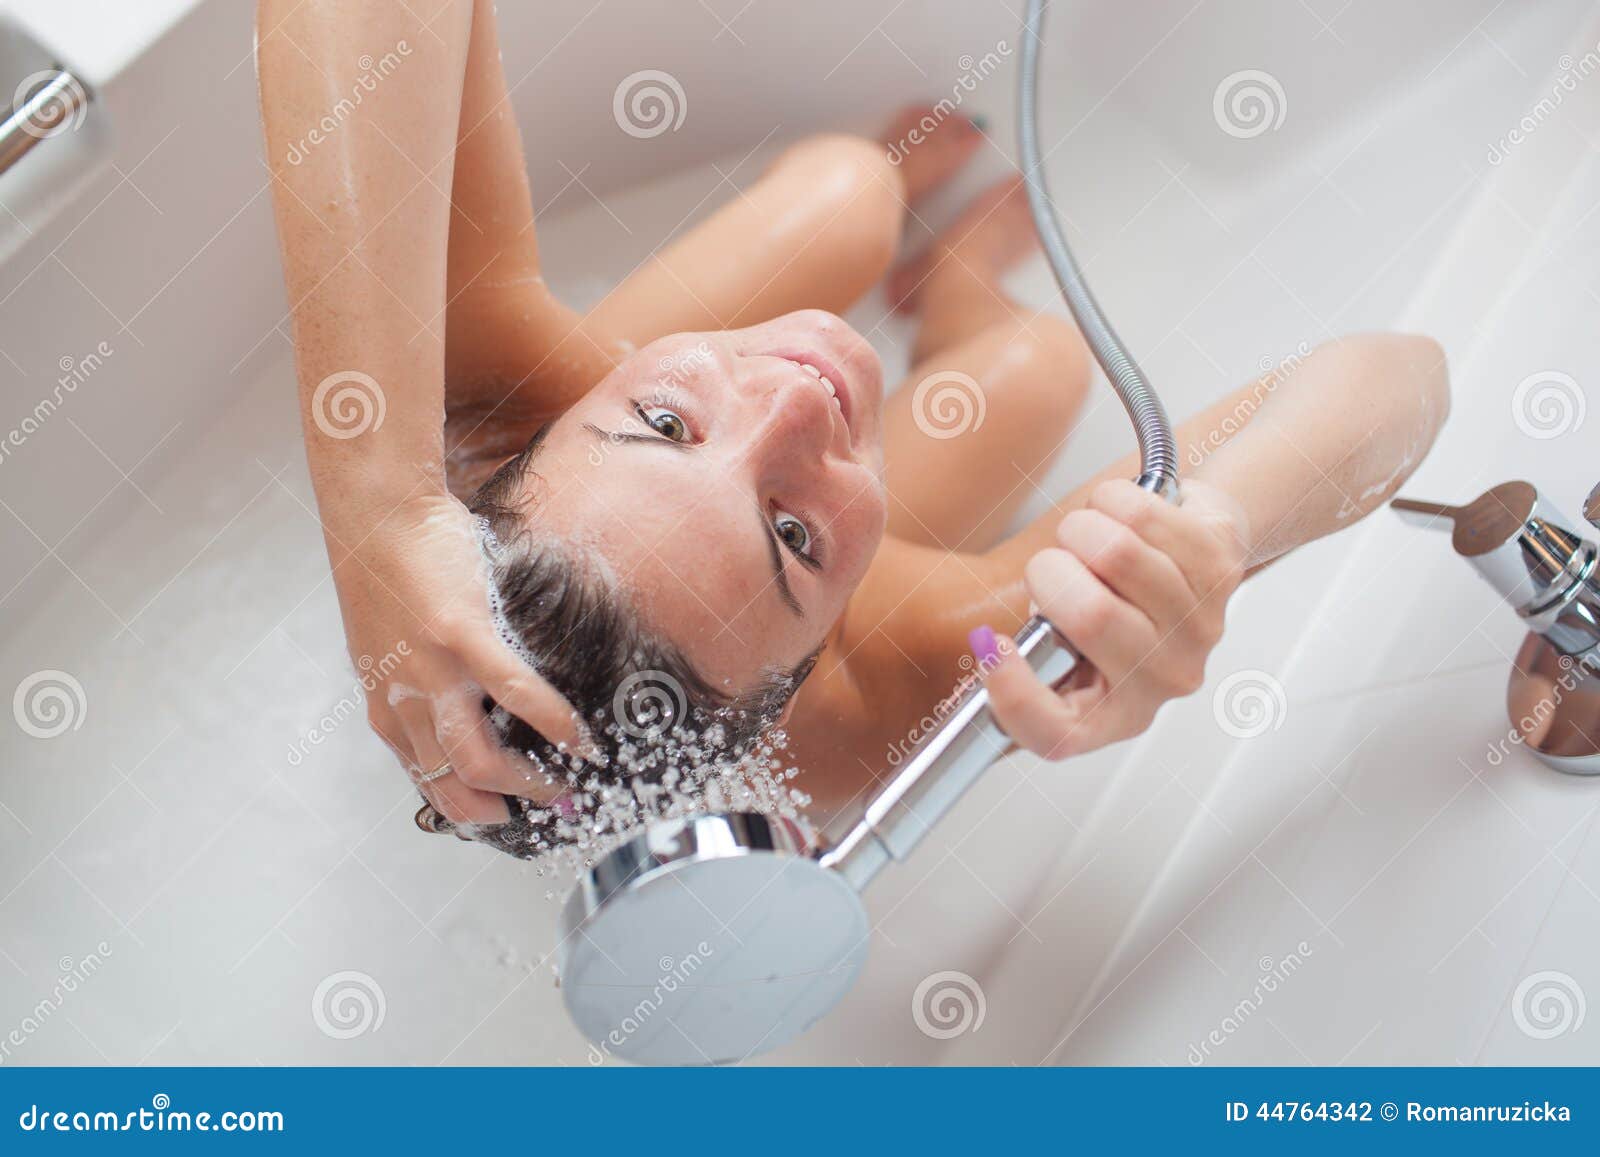 shower taking Hot girl